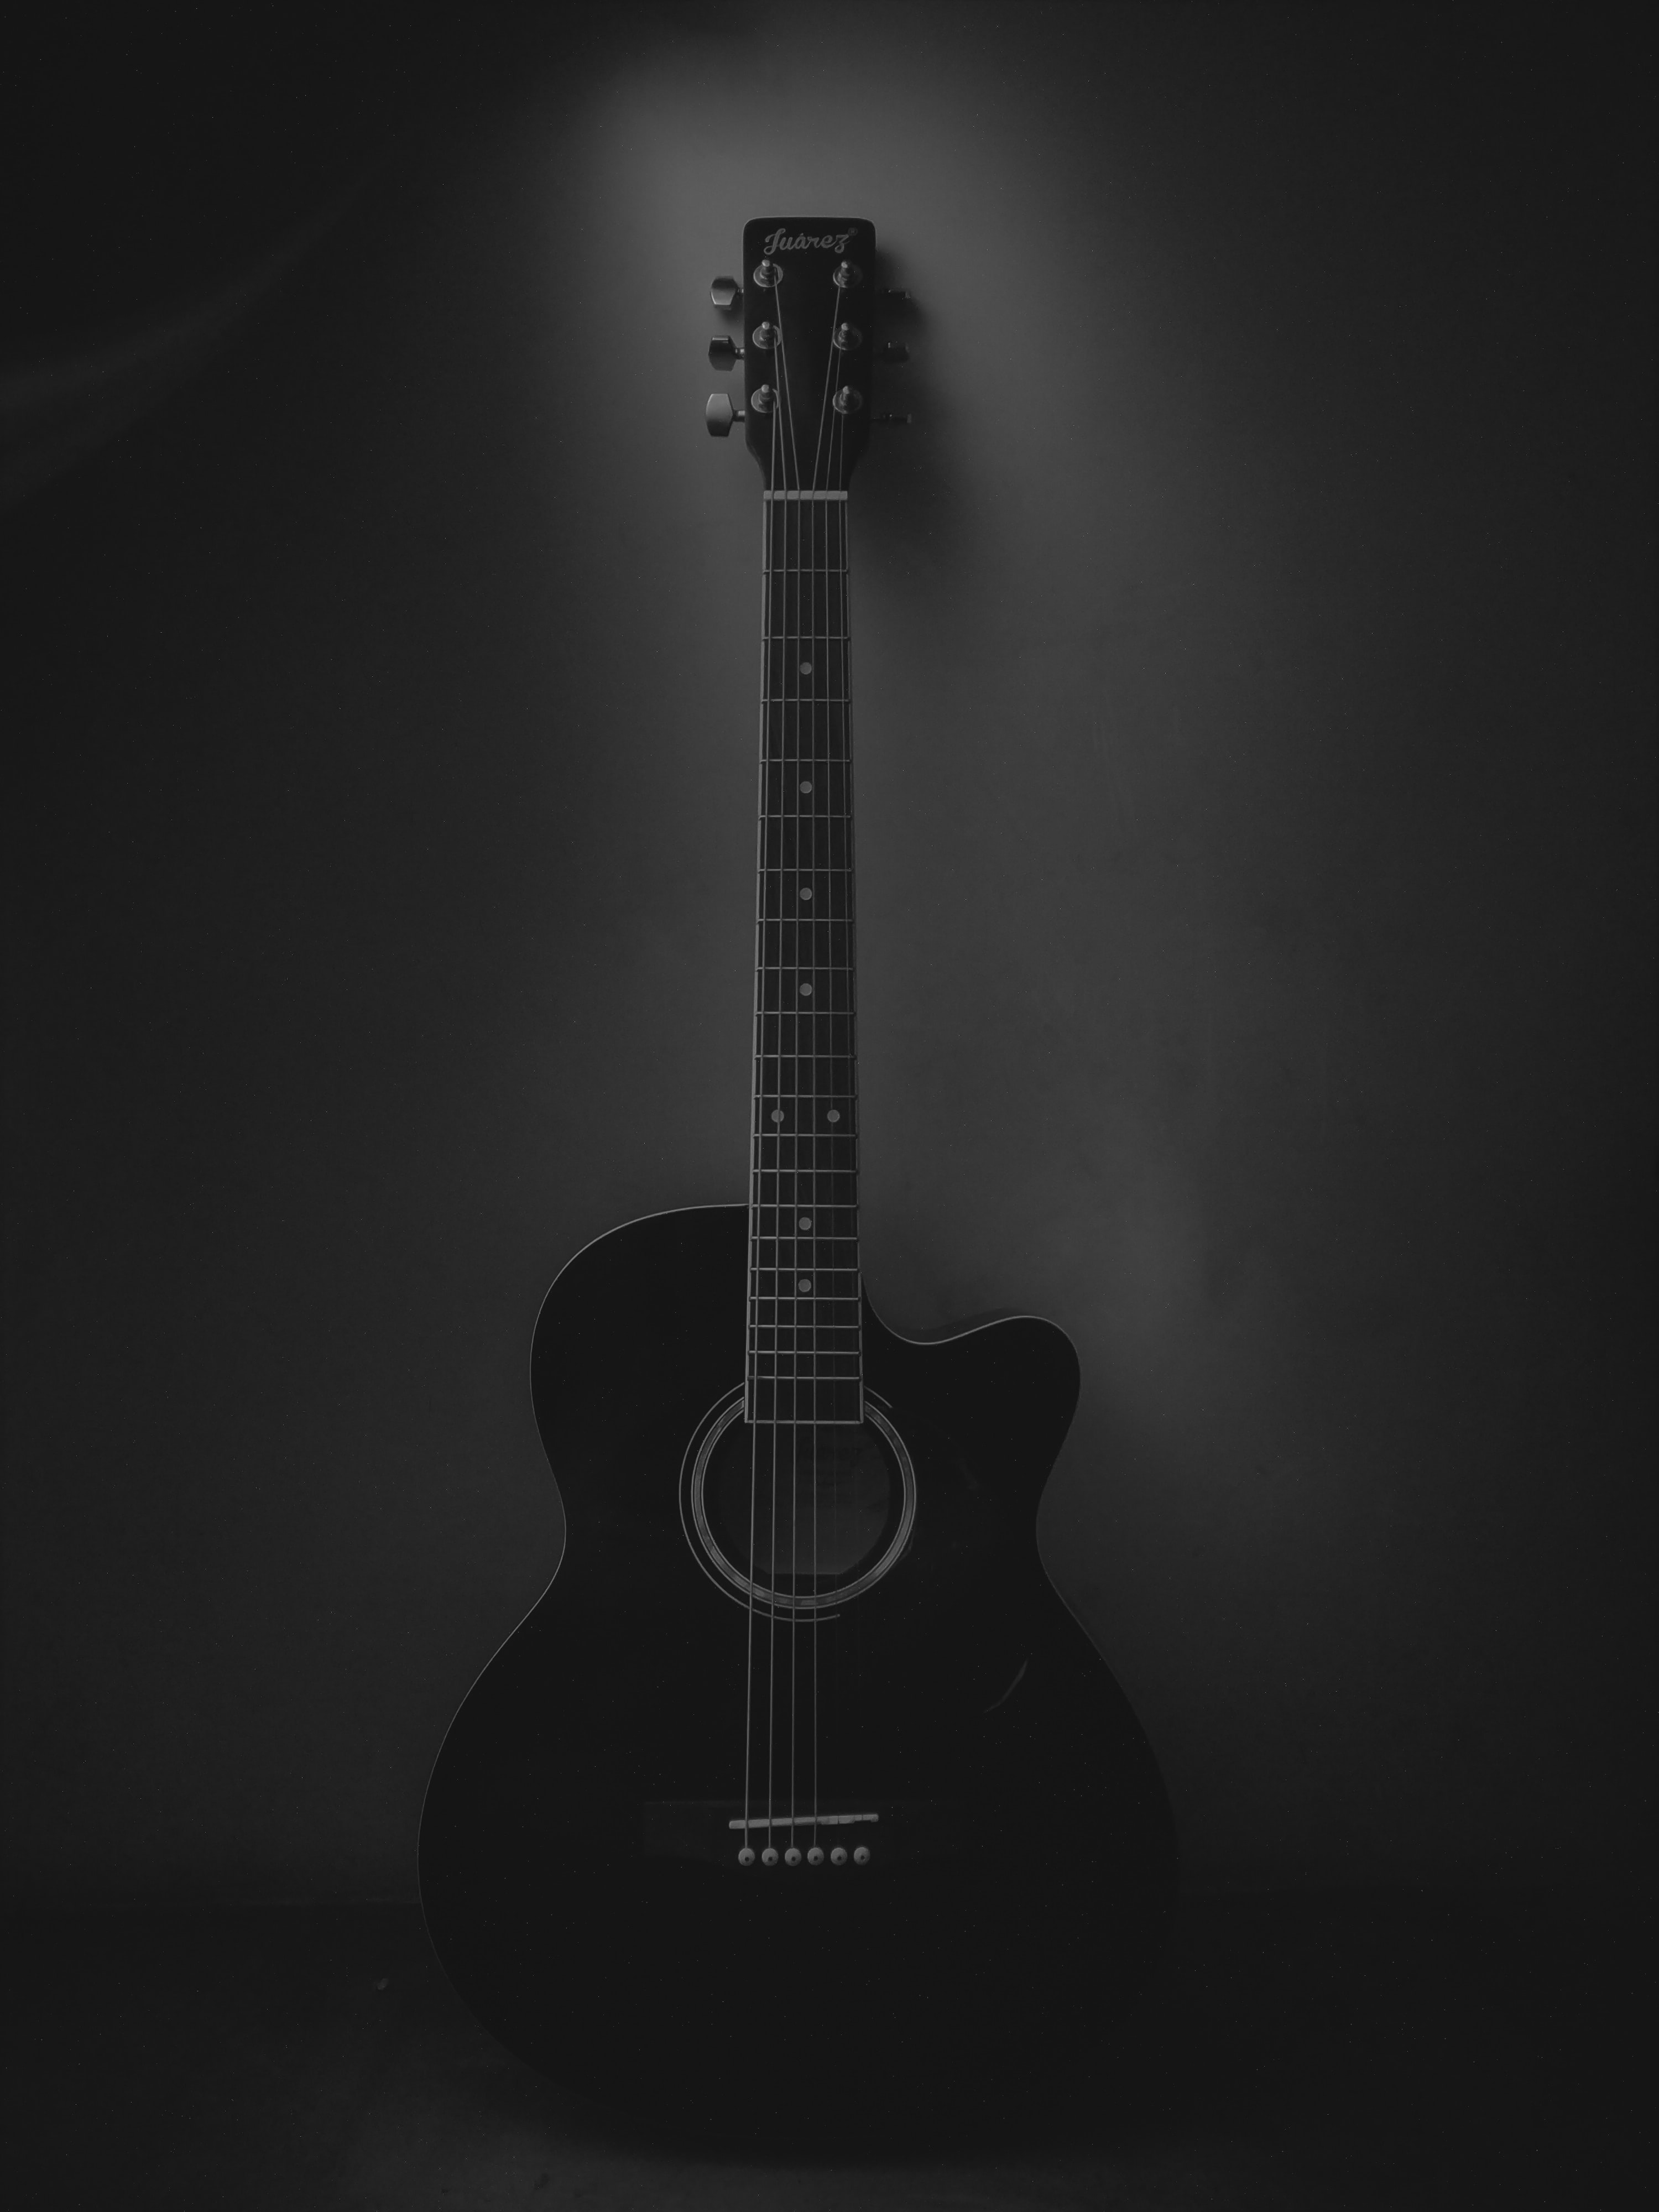 1080p Guitar Hd Images